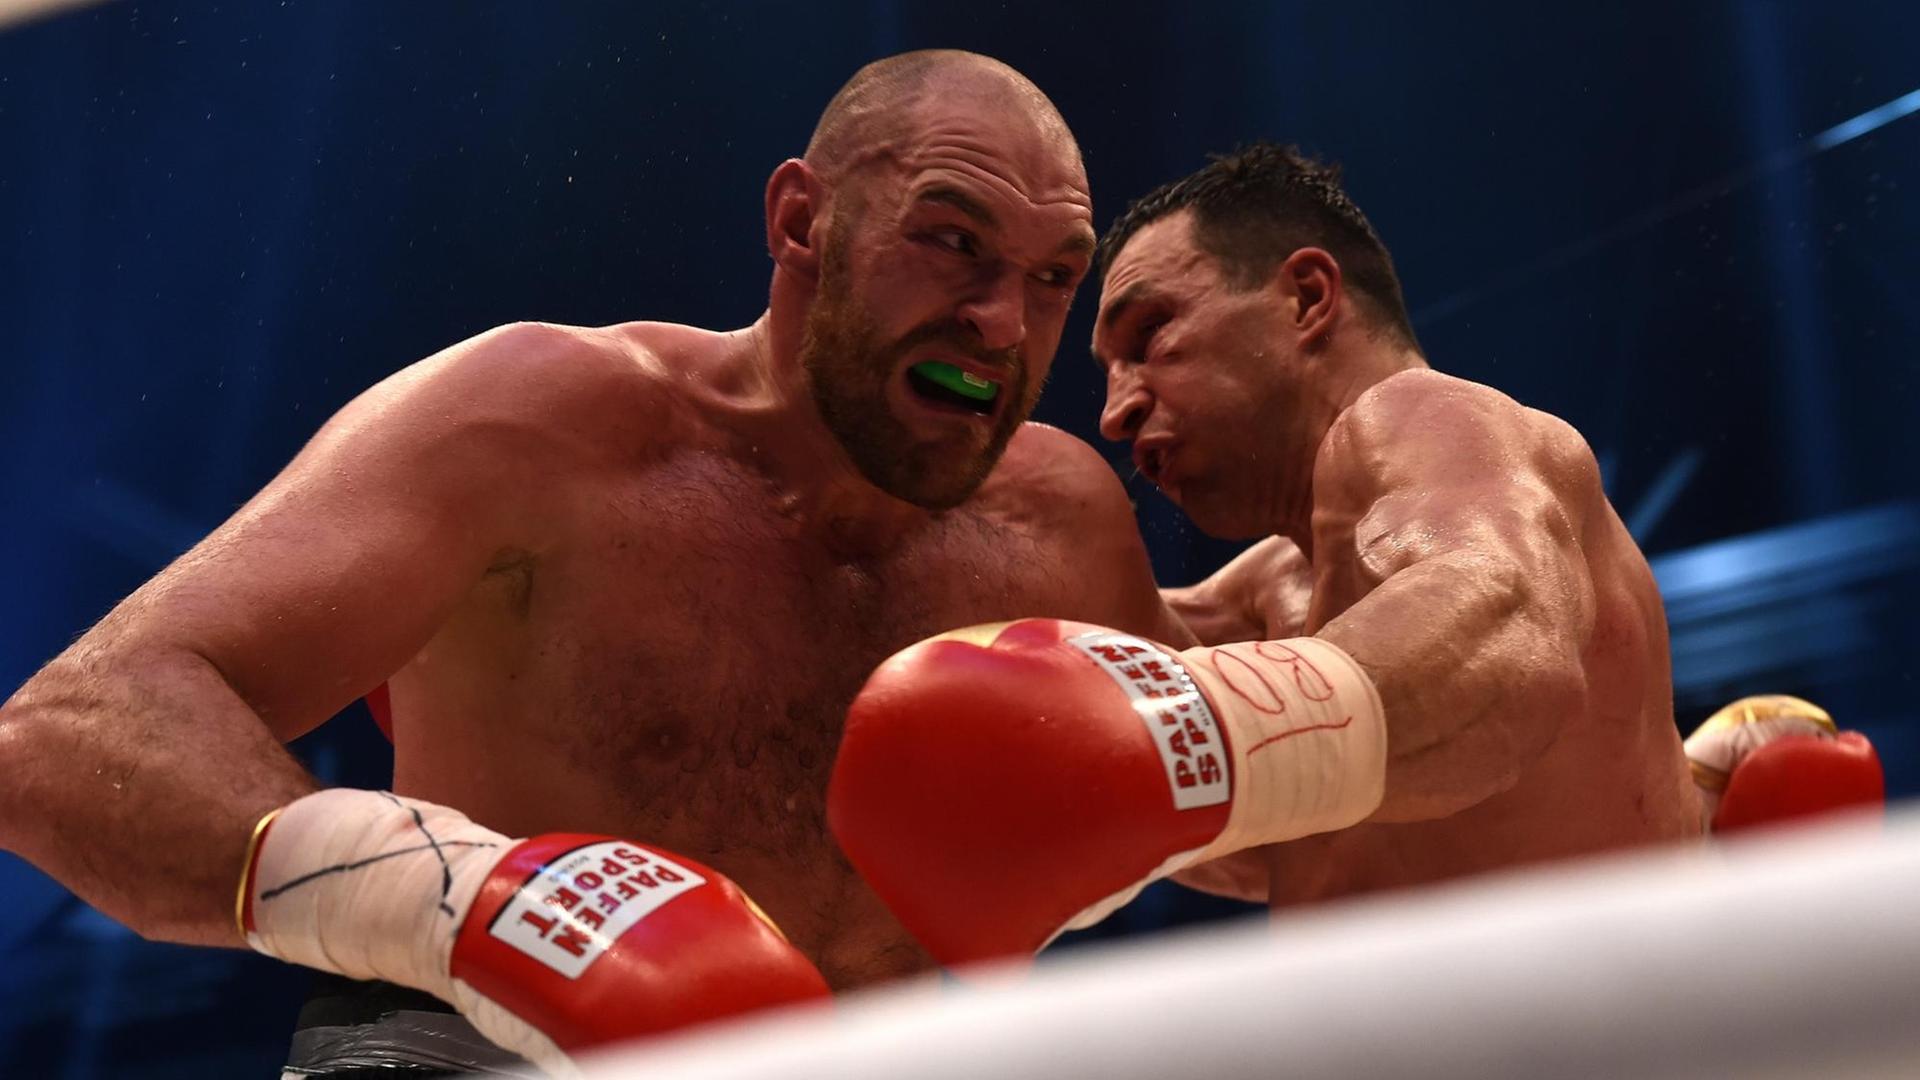 Eine Szene aus dem Kampf zwischen Tyson Fury (links) und Wladimir Klitschko am 28.11.15 in Düsseldorf; Fury wird neuer Weltmeister im Schwergewicht